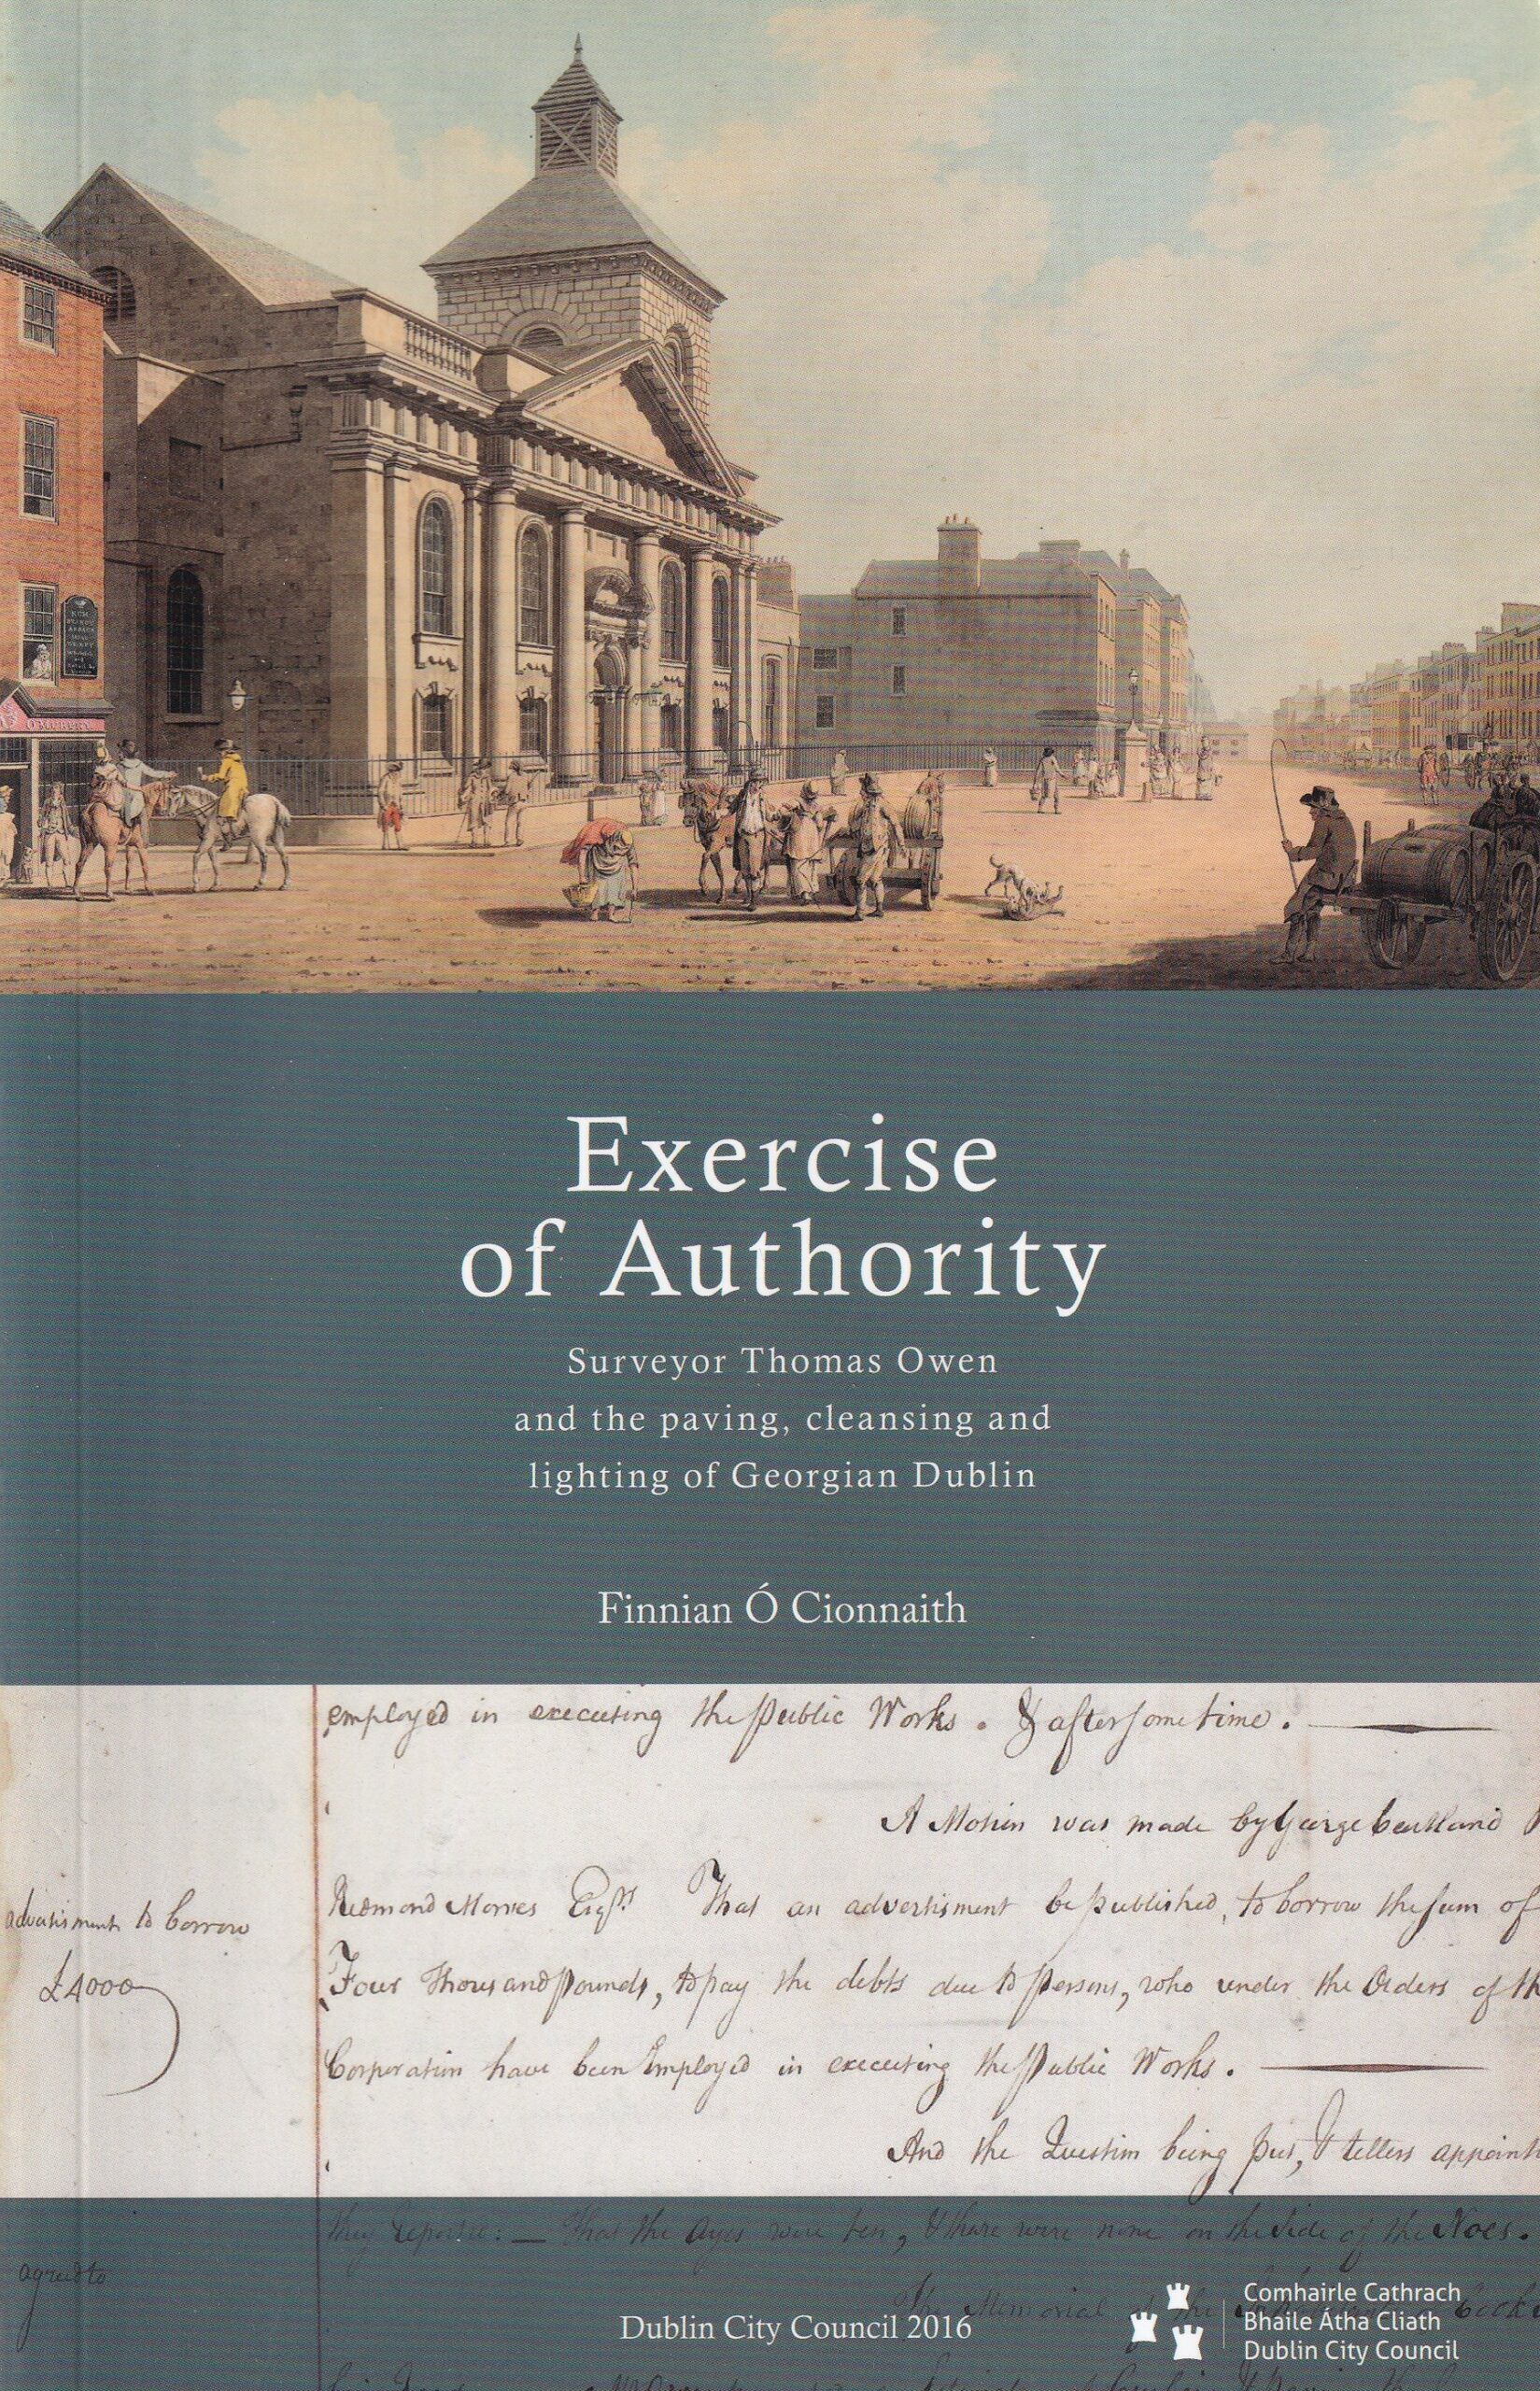 Exercise of Authority: Surveyor Thomas Owen and the Paving, Cleansing and Lighting of Georgian Dublin by Finnian Ó Cionnaith